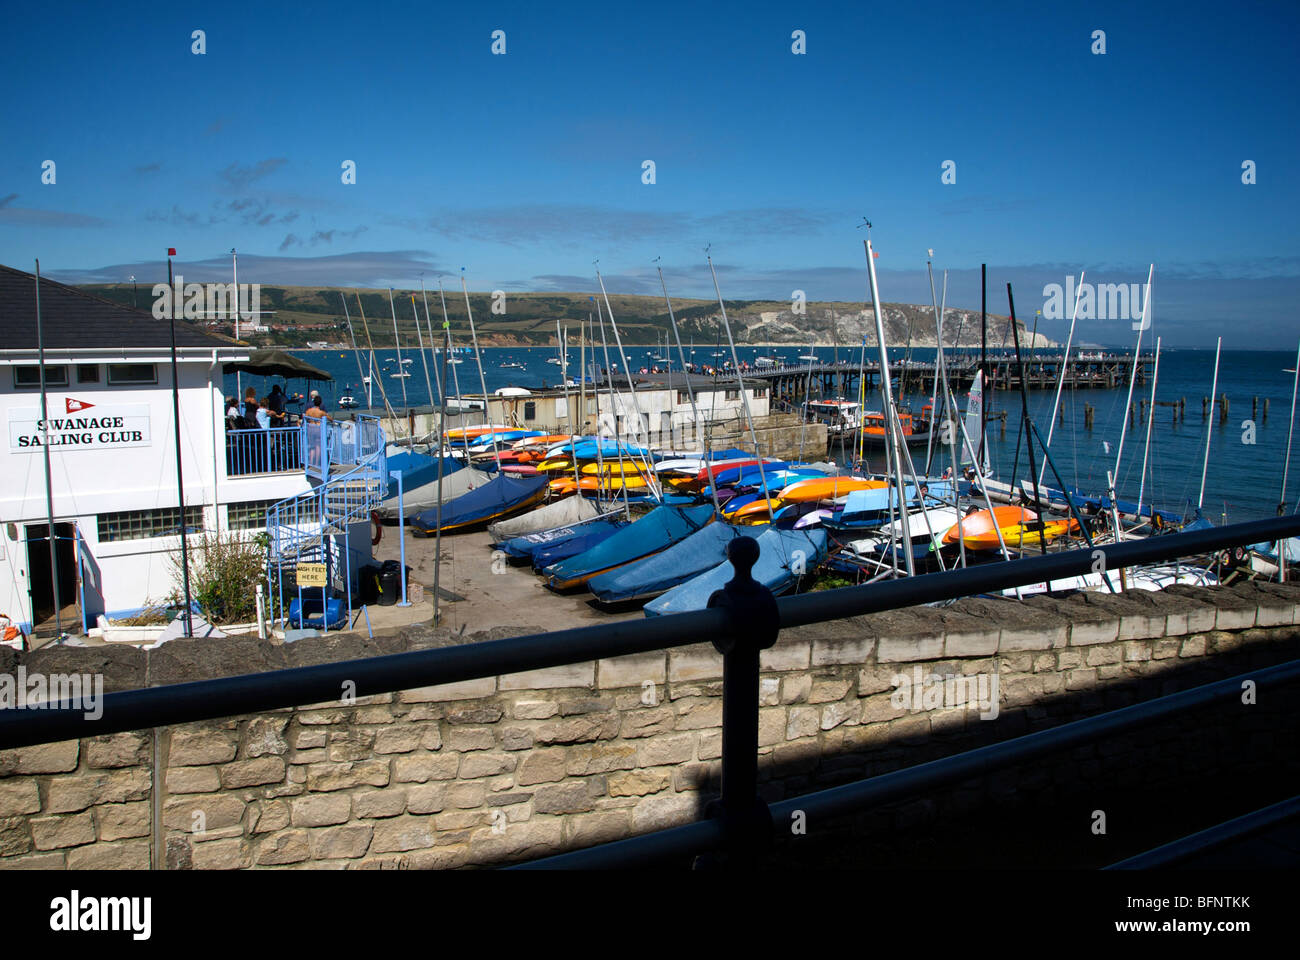 Swanage Dorset UK Sailing Boat Marina Pier Club Stock Photo